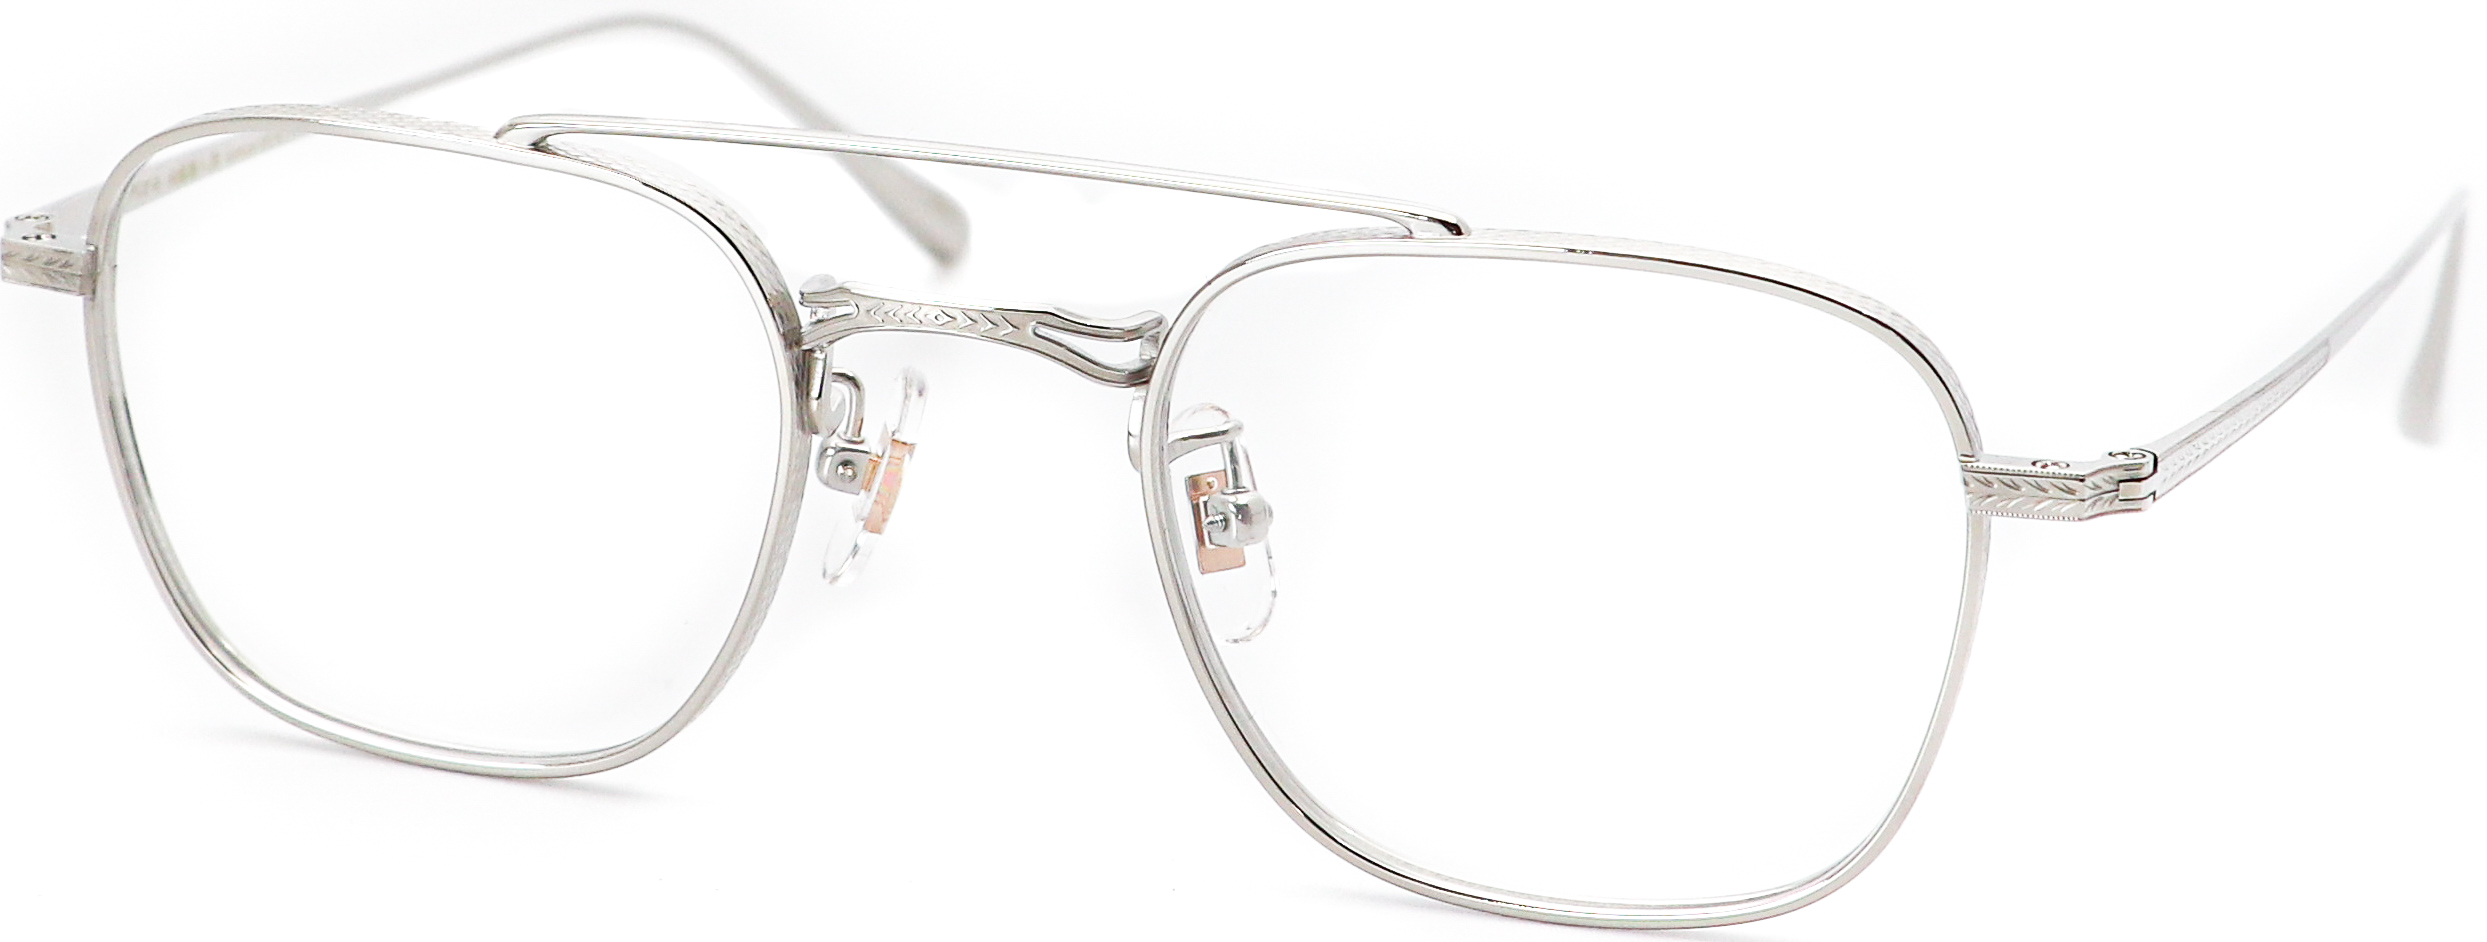 眼鏡のカラータイプC-4 Silver